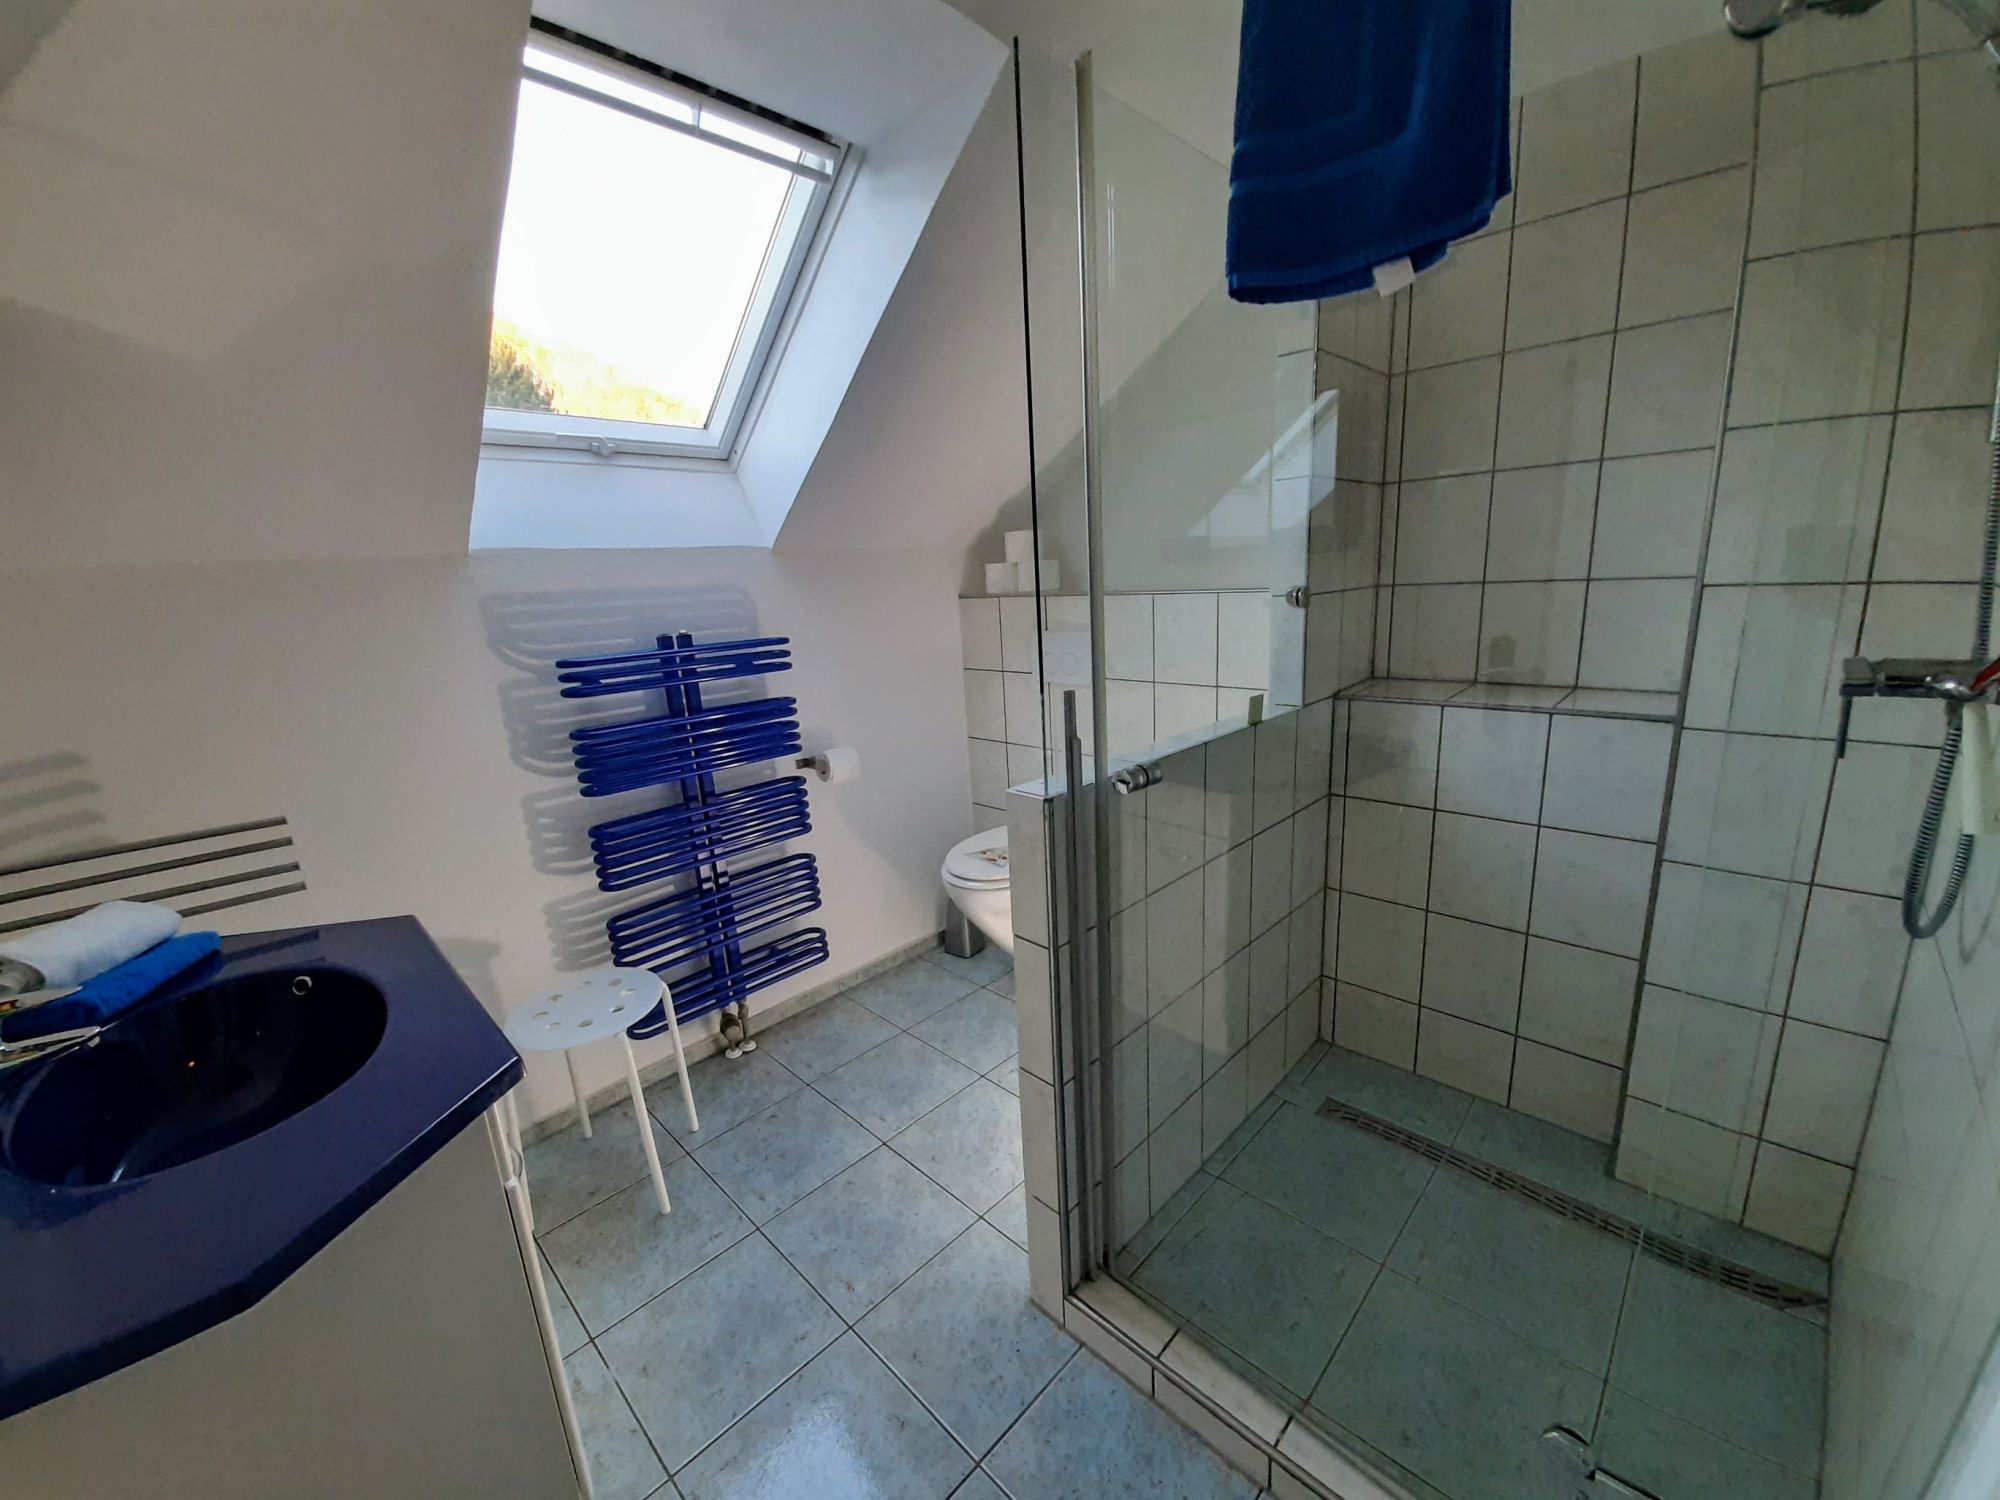 Eifel Landhaus - Das Blaue Bad im DG